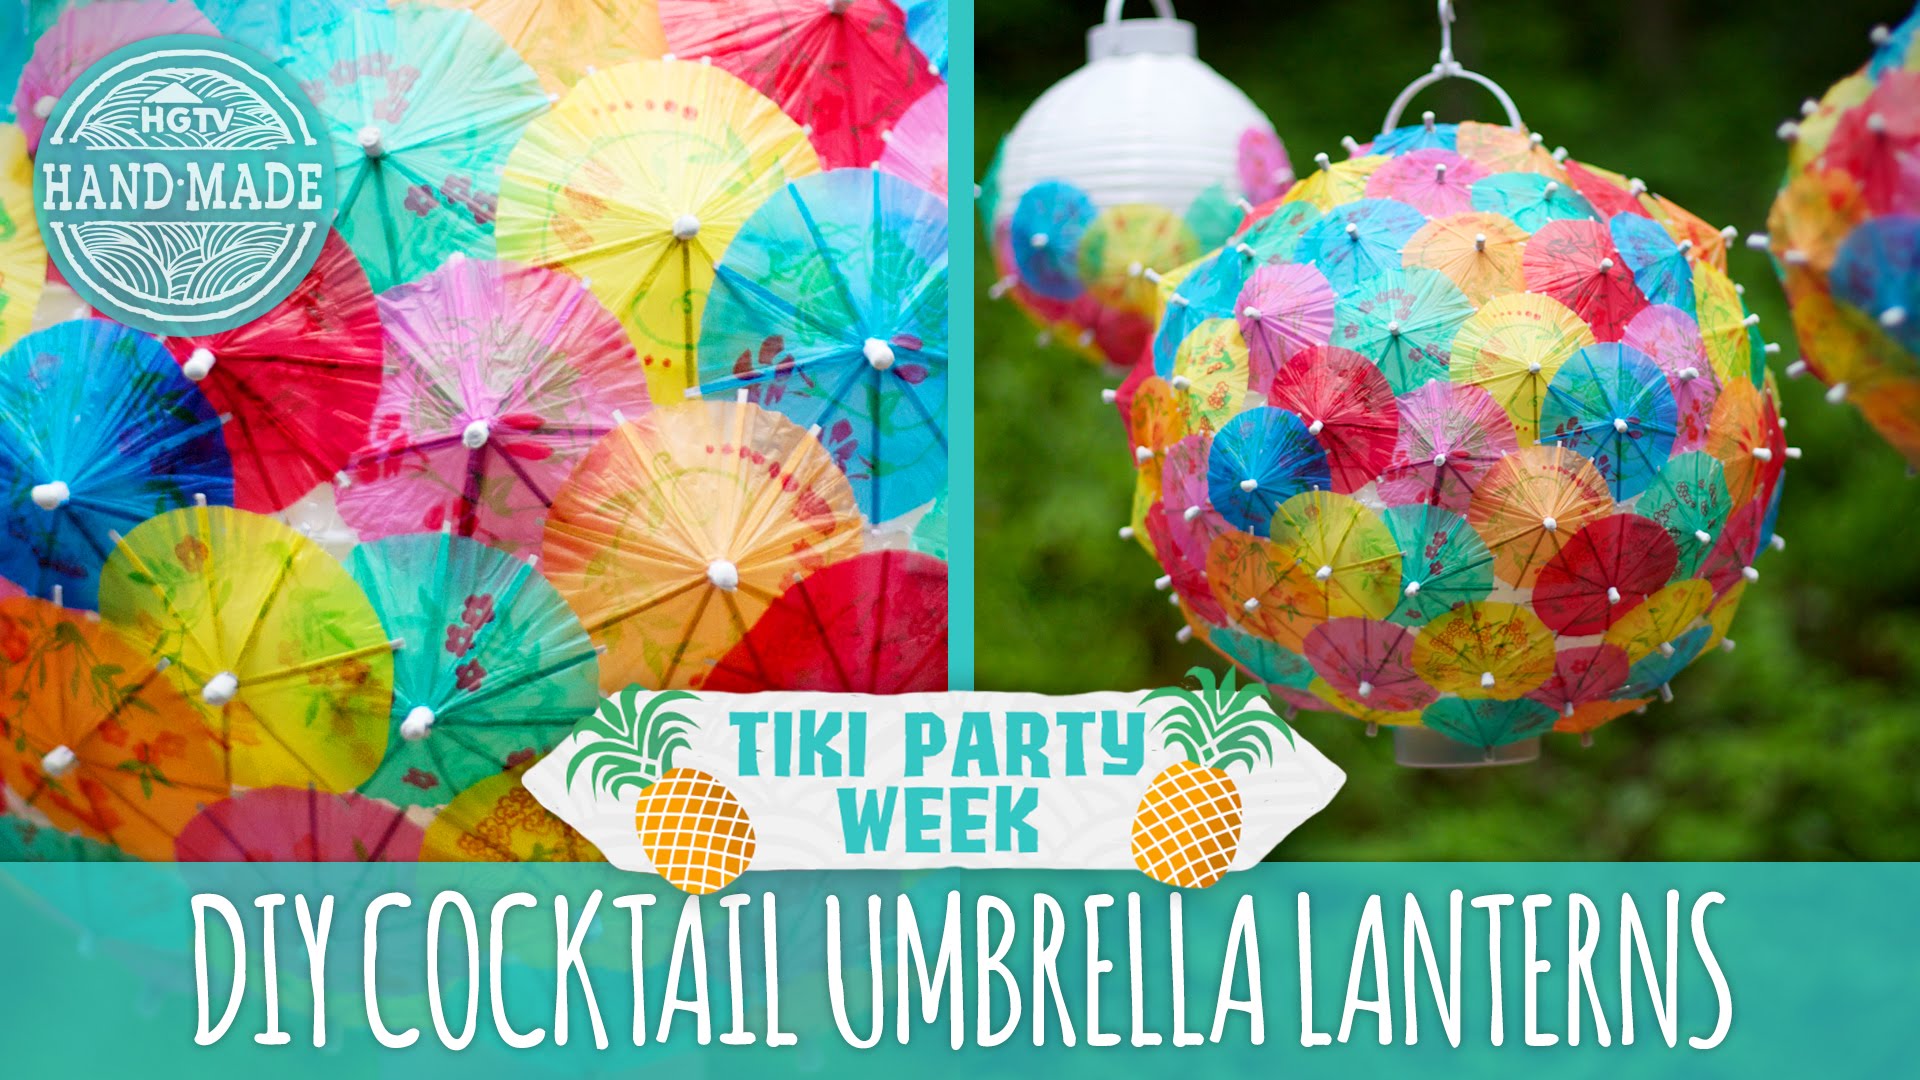 DIY Cocktail Umbrella Lanterns - Tiki Party Week - HGTV Handmade ...